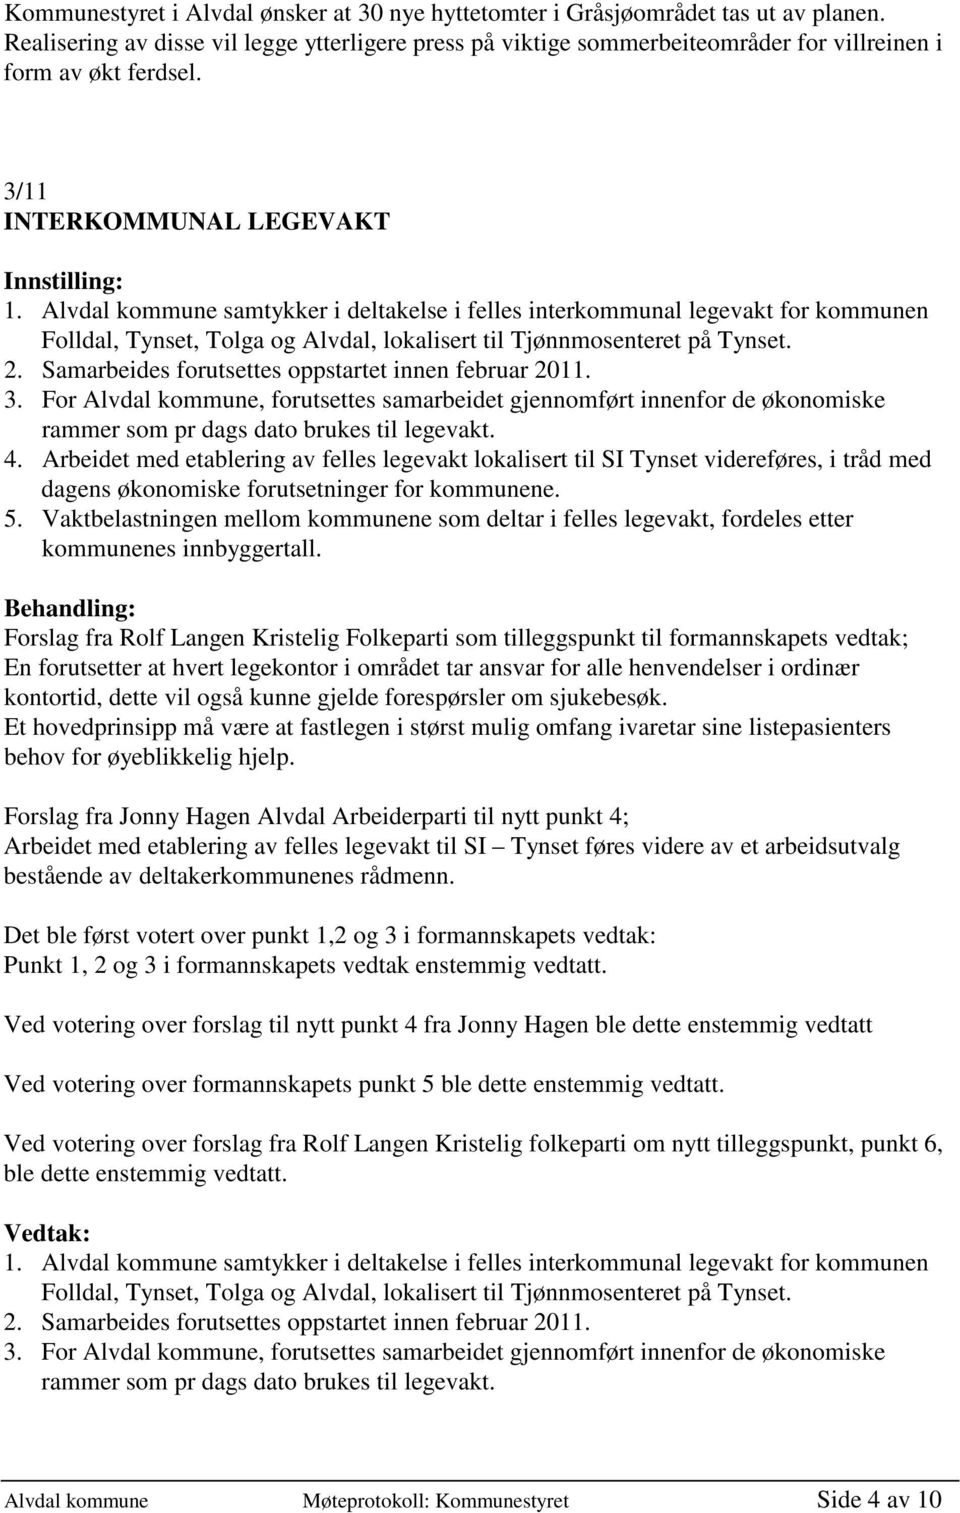 Alvdal kommune samtykker i deltakelse i felles interkommunal legevakt for kommunen Folldal, Tynset, Tolga og Alvdal, lokalisert til Tjønnmosenteret på Tynset. 2.